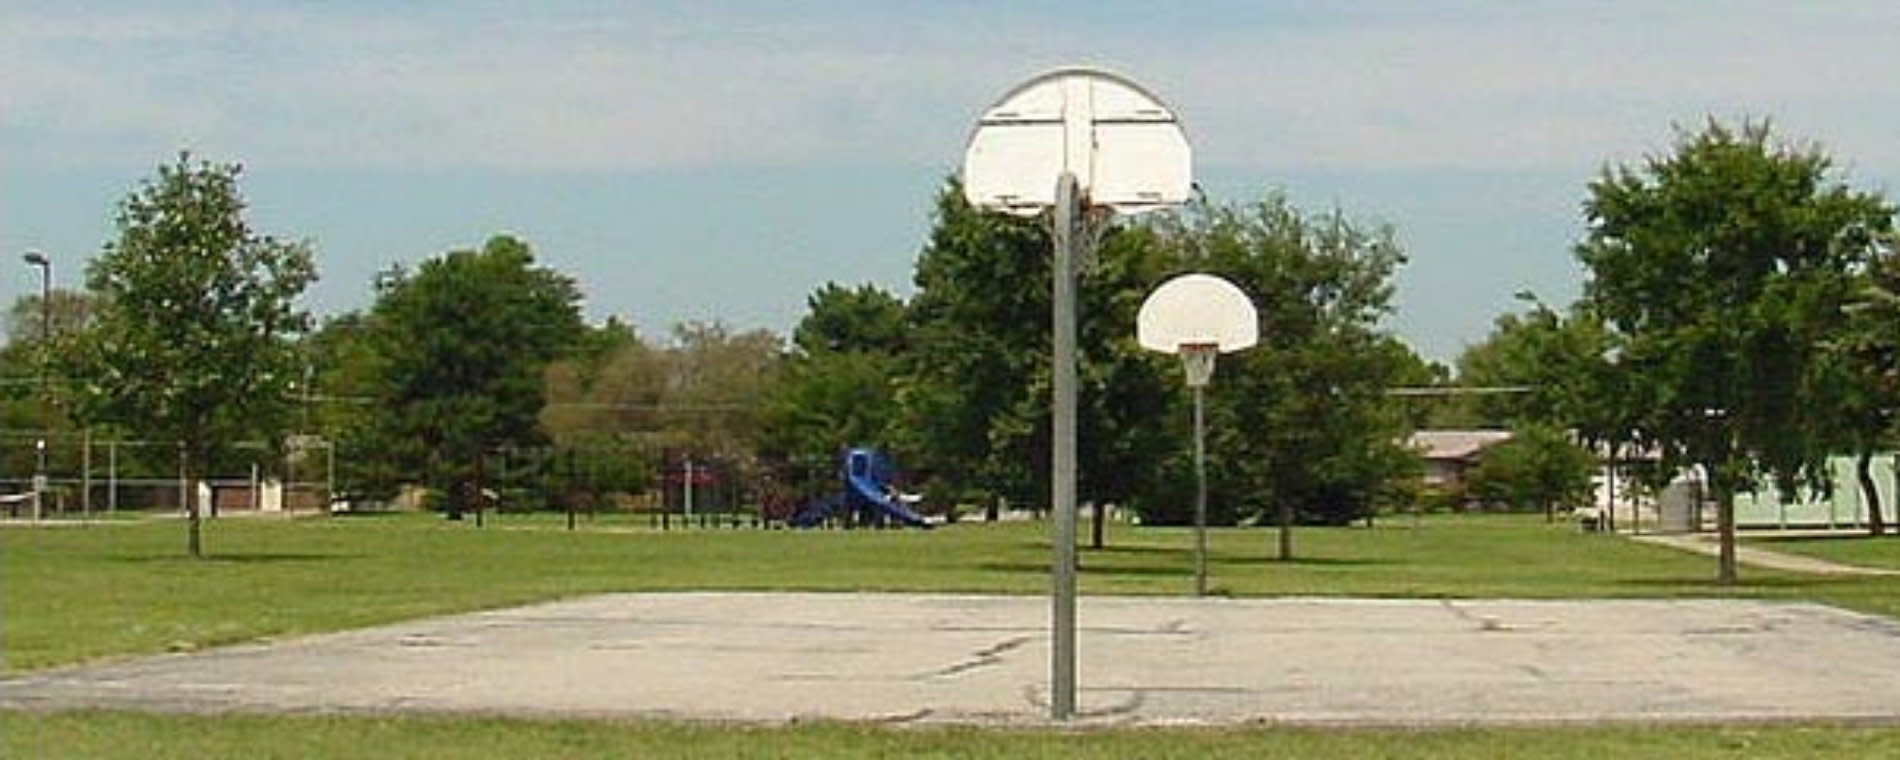 Basketball Courts at Osage Park Wichita